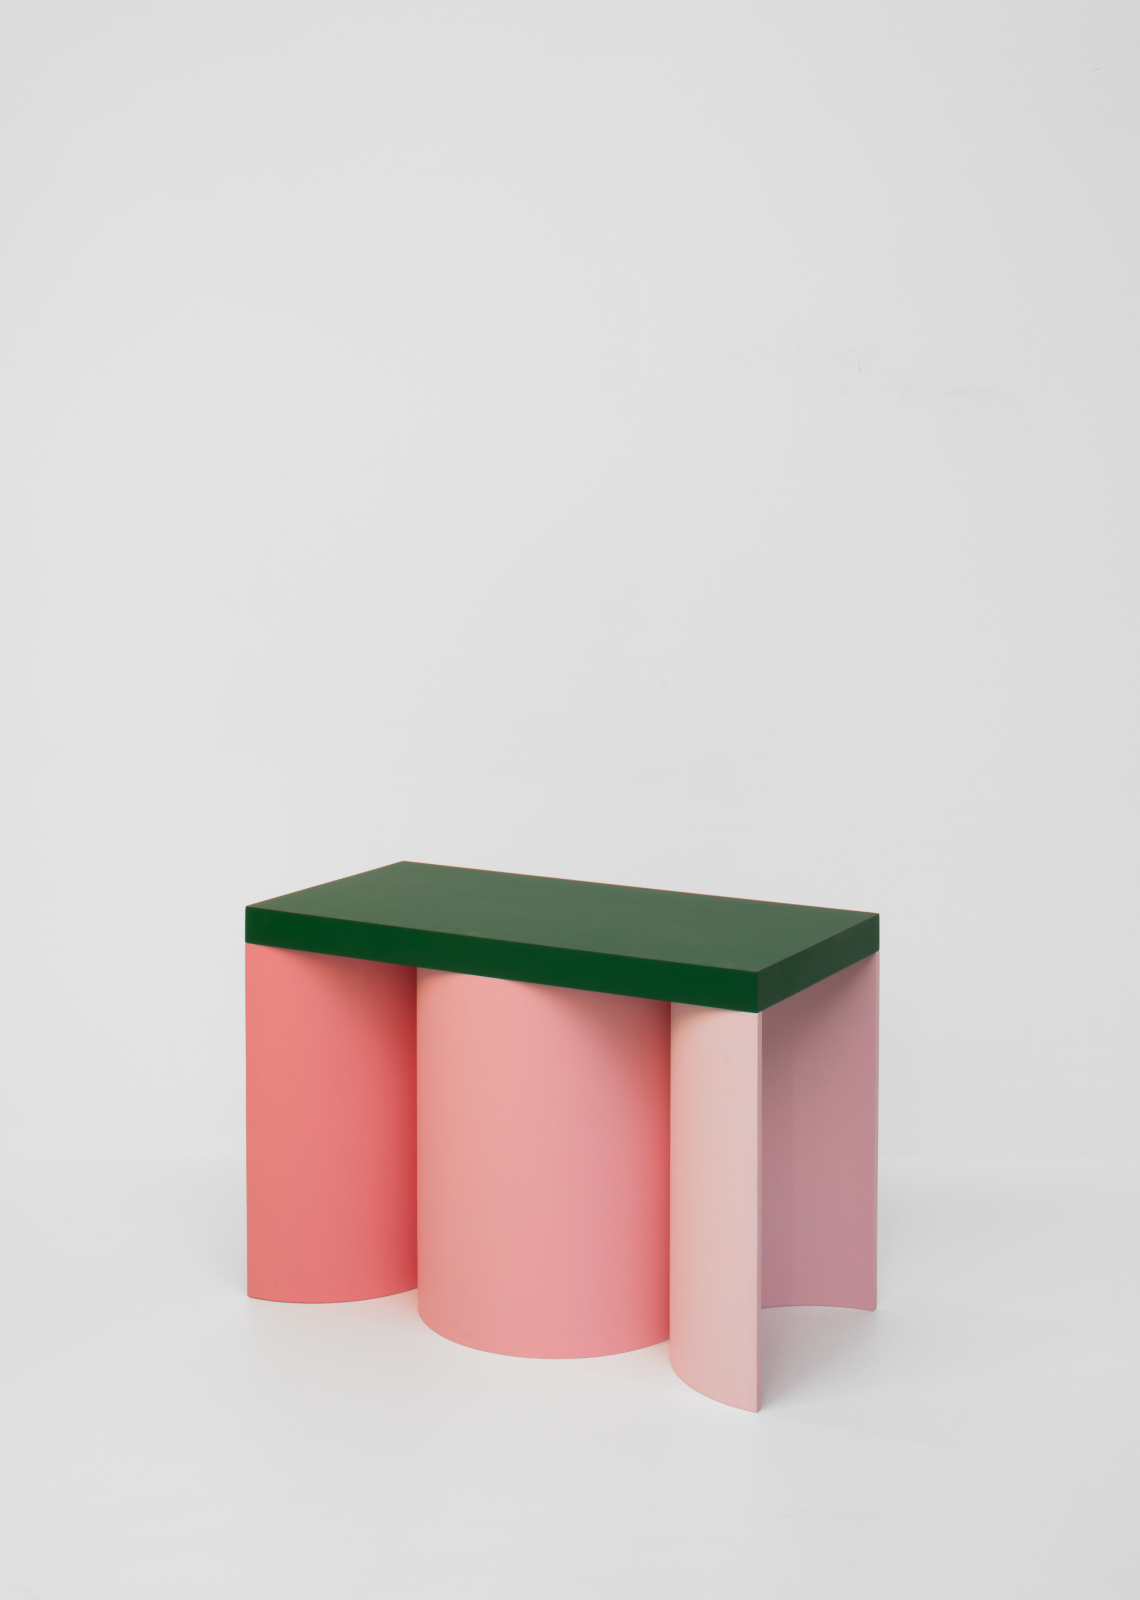 stools furniture exterior colour design public